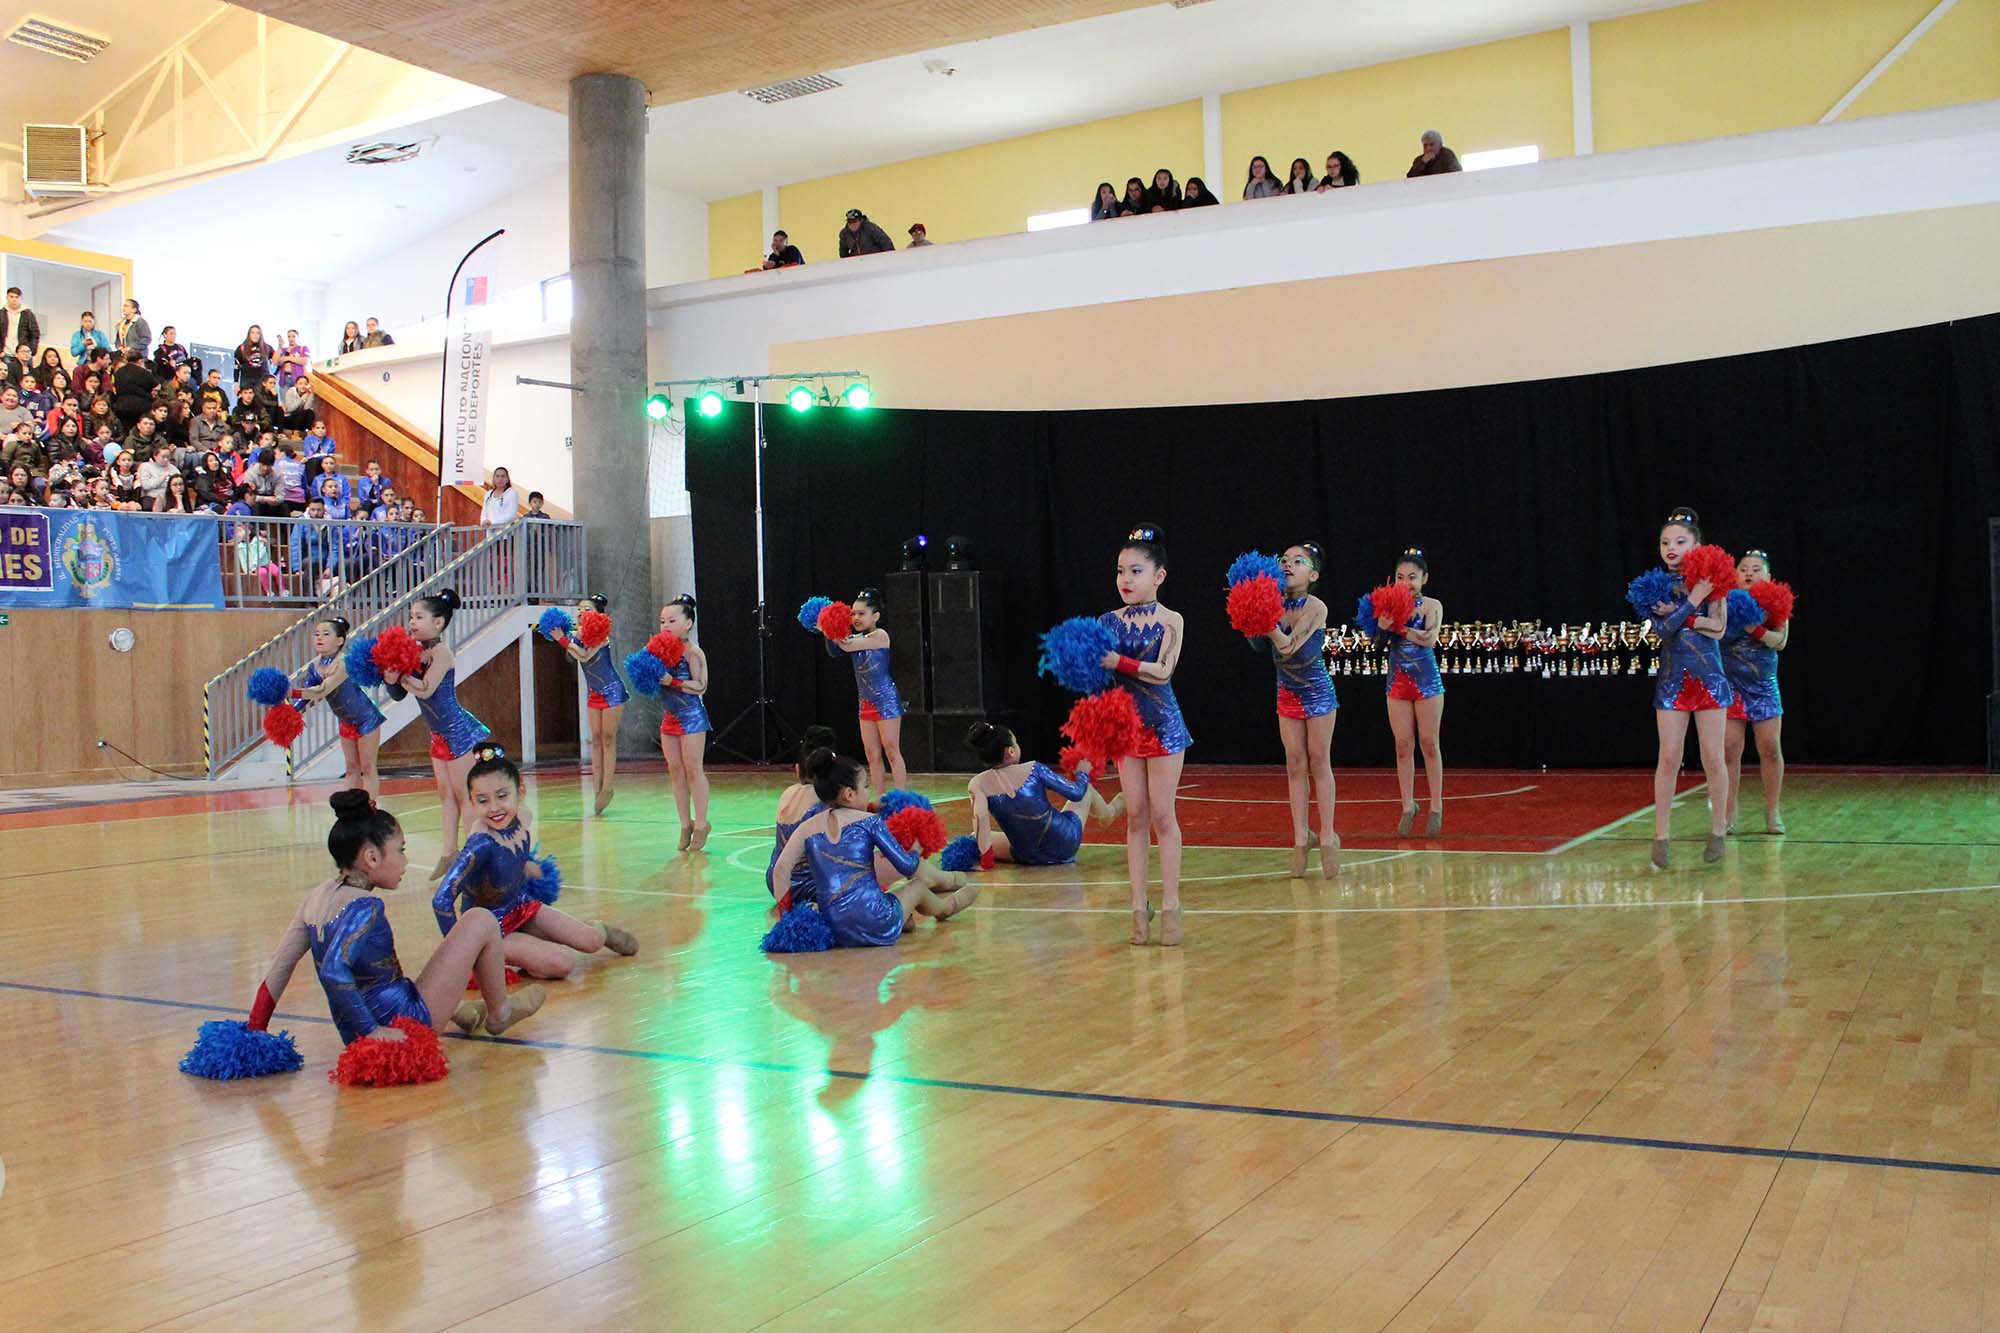 50 equipos participaron del Primer Campeonato de Dance organizado por el Municipio de Punta Arenas